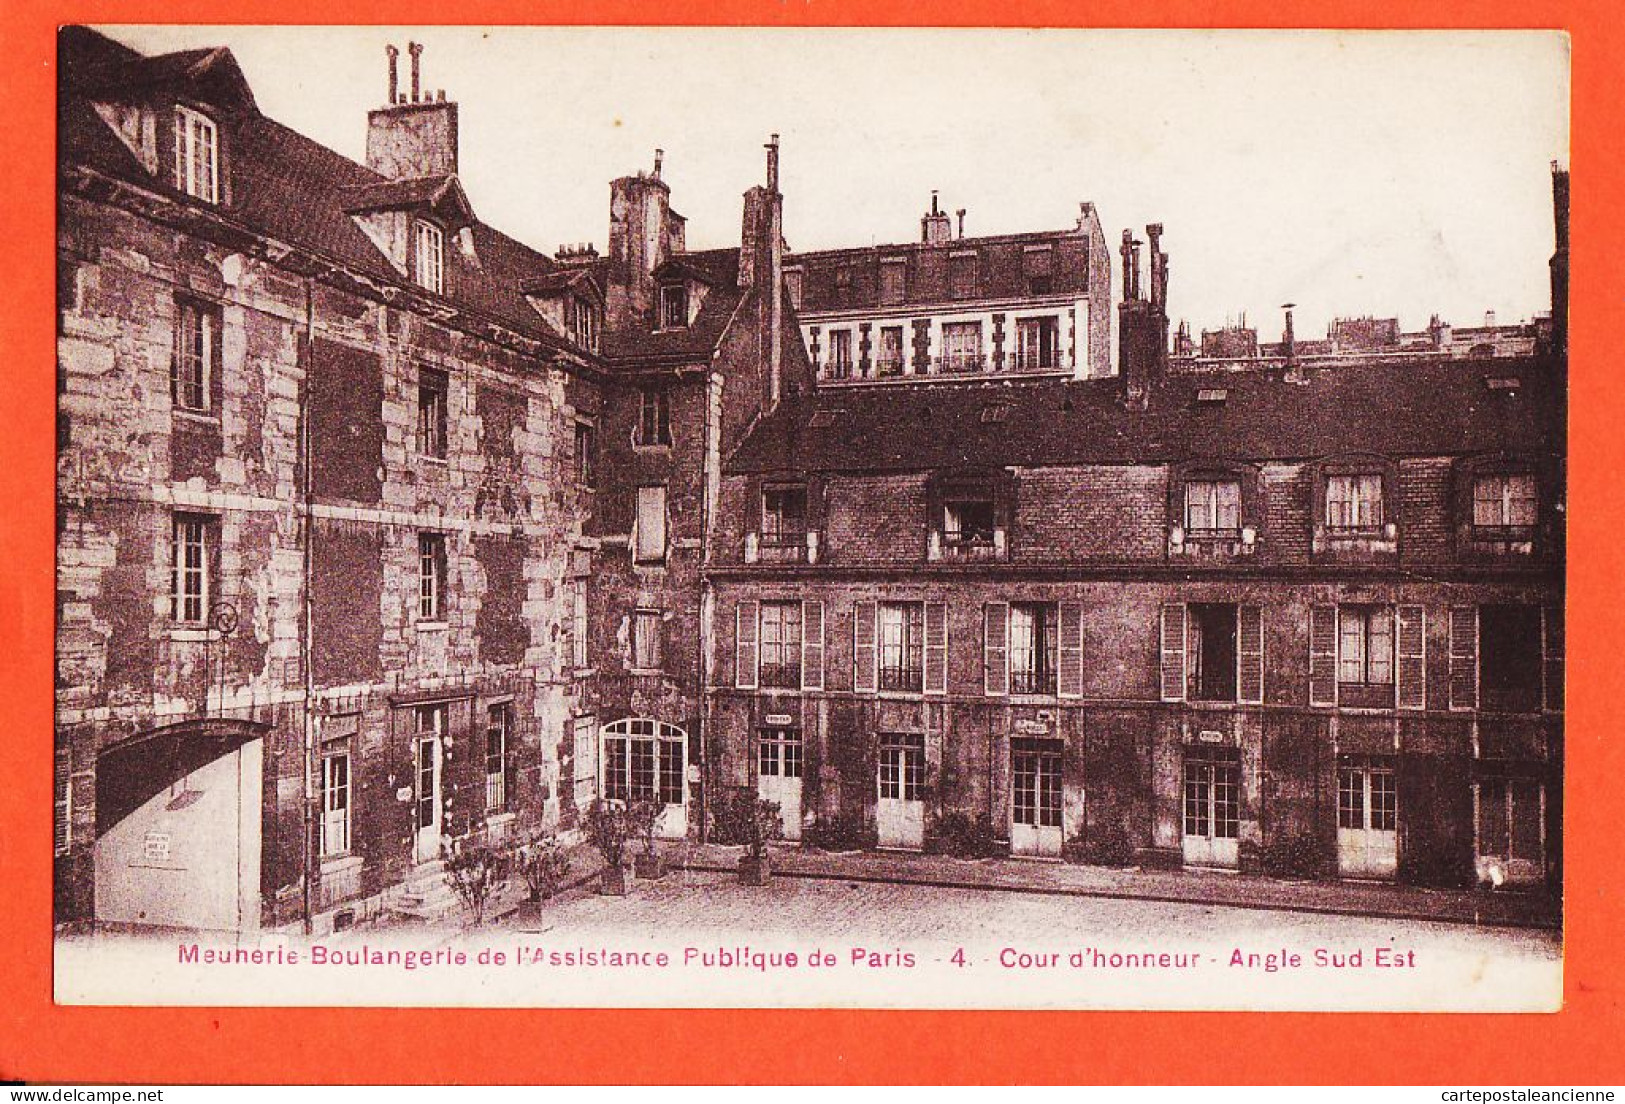 16382 / PARIS Meunerie Boulangerie Assistance Publique Cour Honneur Angle Sud-Est 1910s Simi-Bromure BREGER 4 - Health, Hospitals